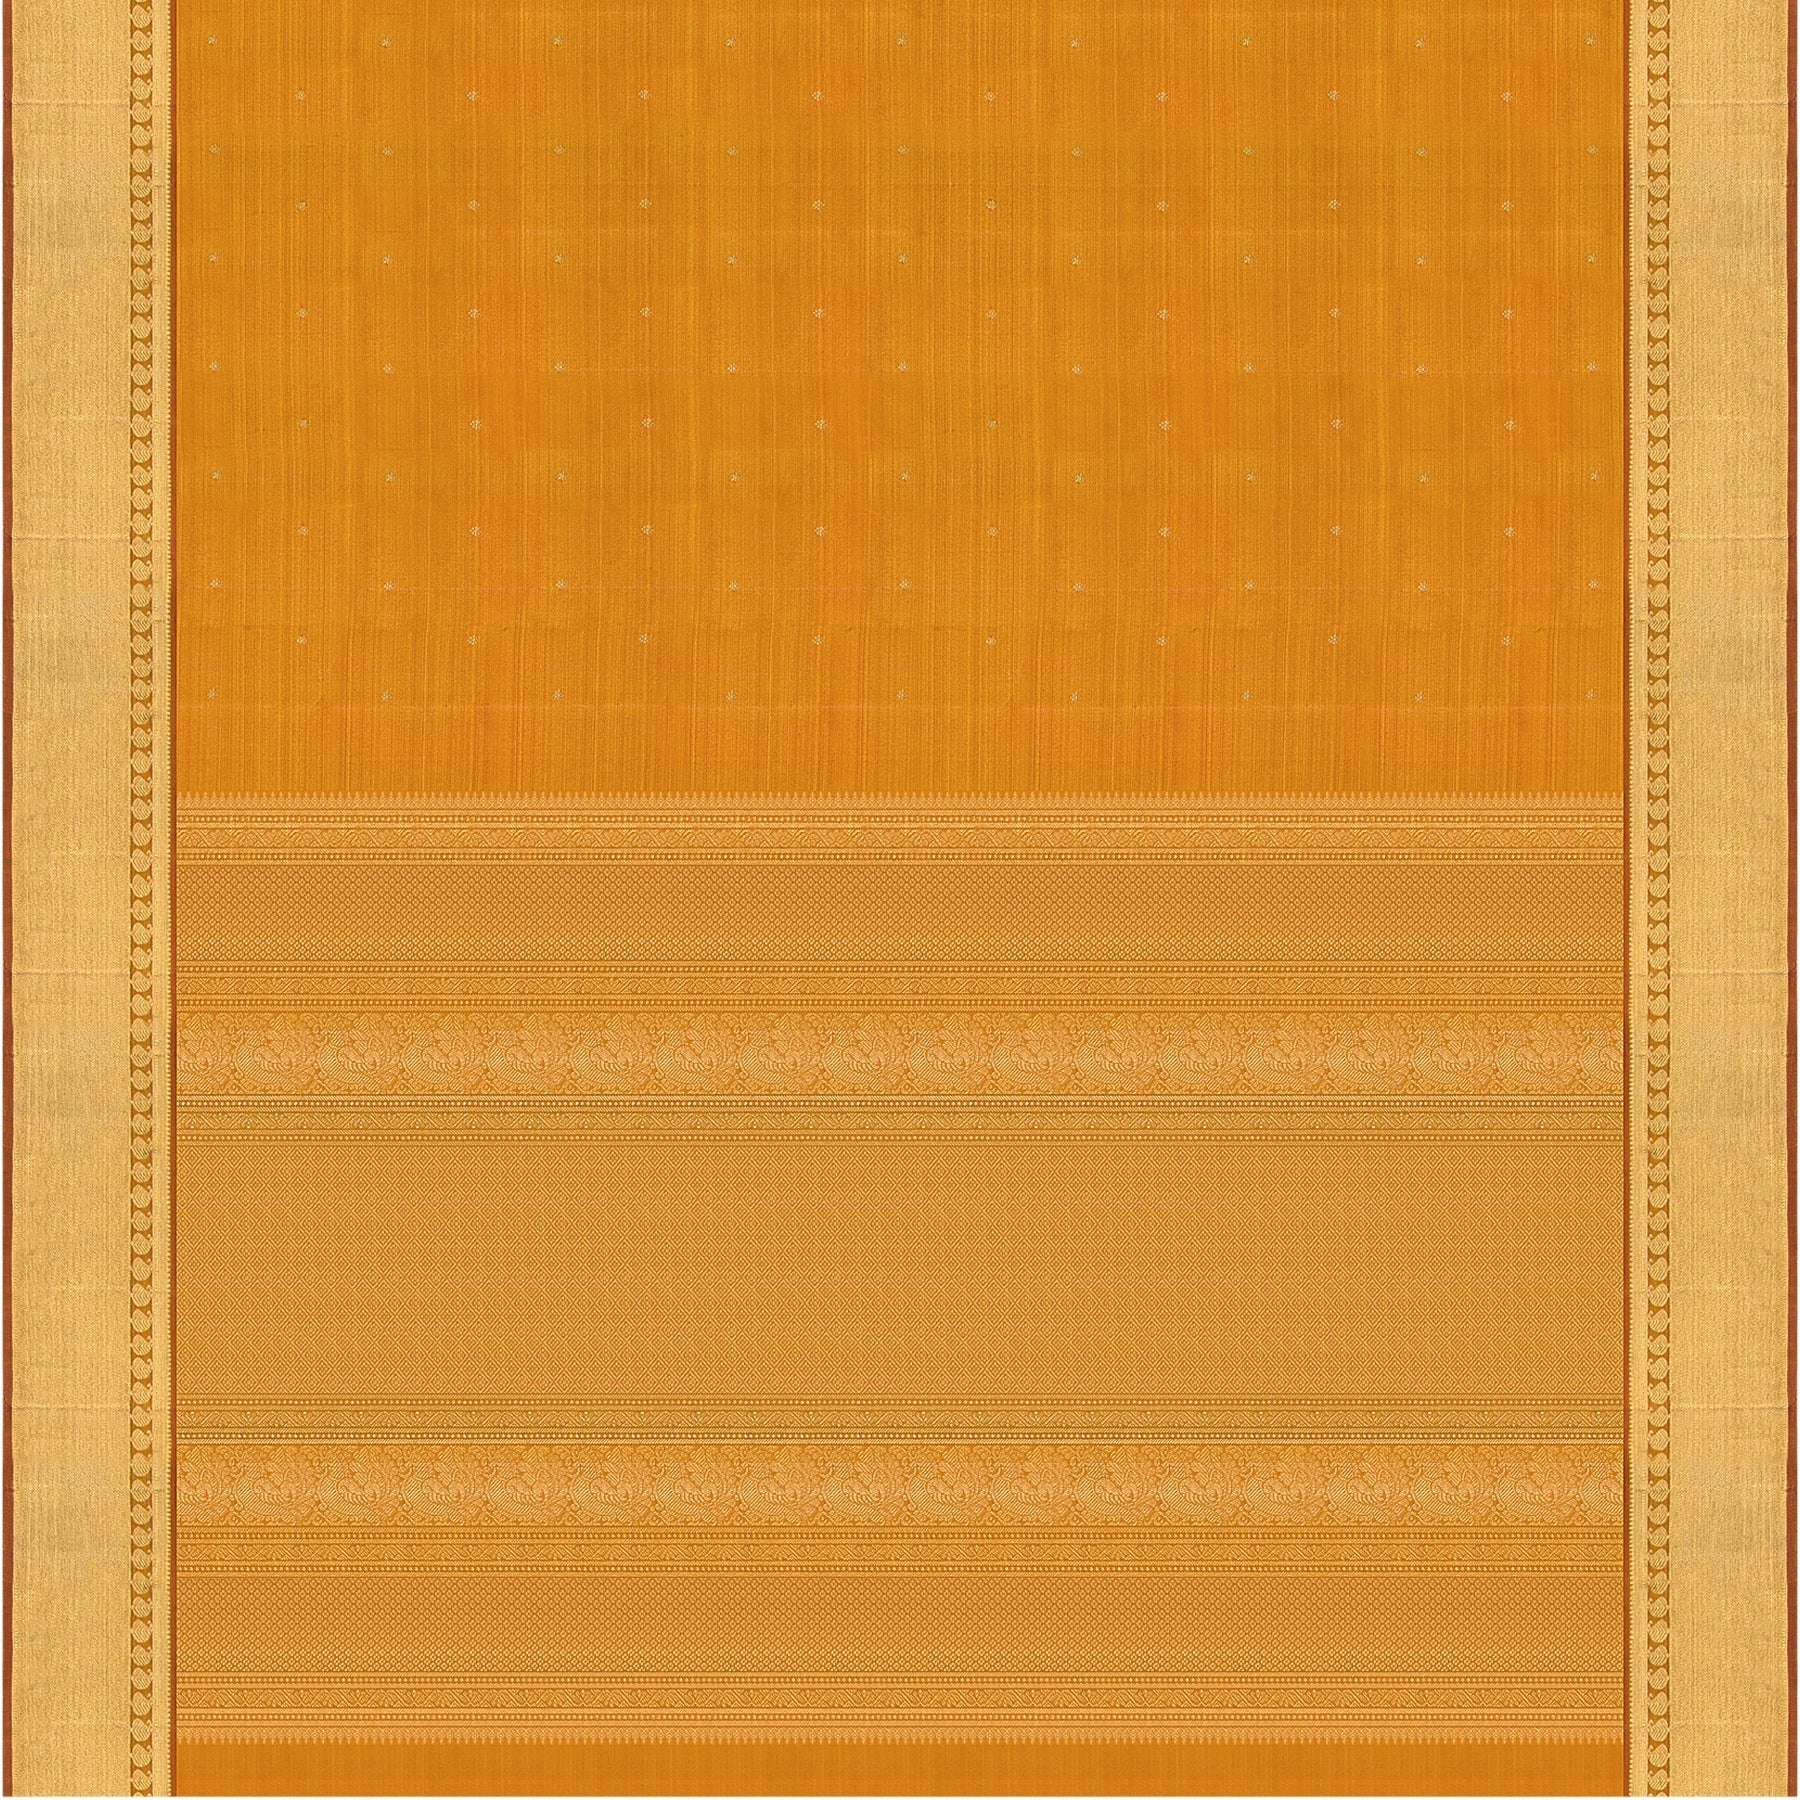 Kanakavalli Kanjivaram Silk Sari 23-611-HS001-04550 - Full View